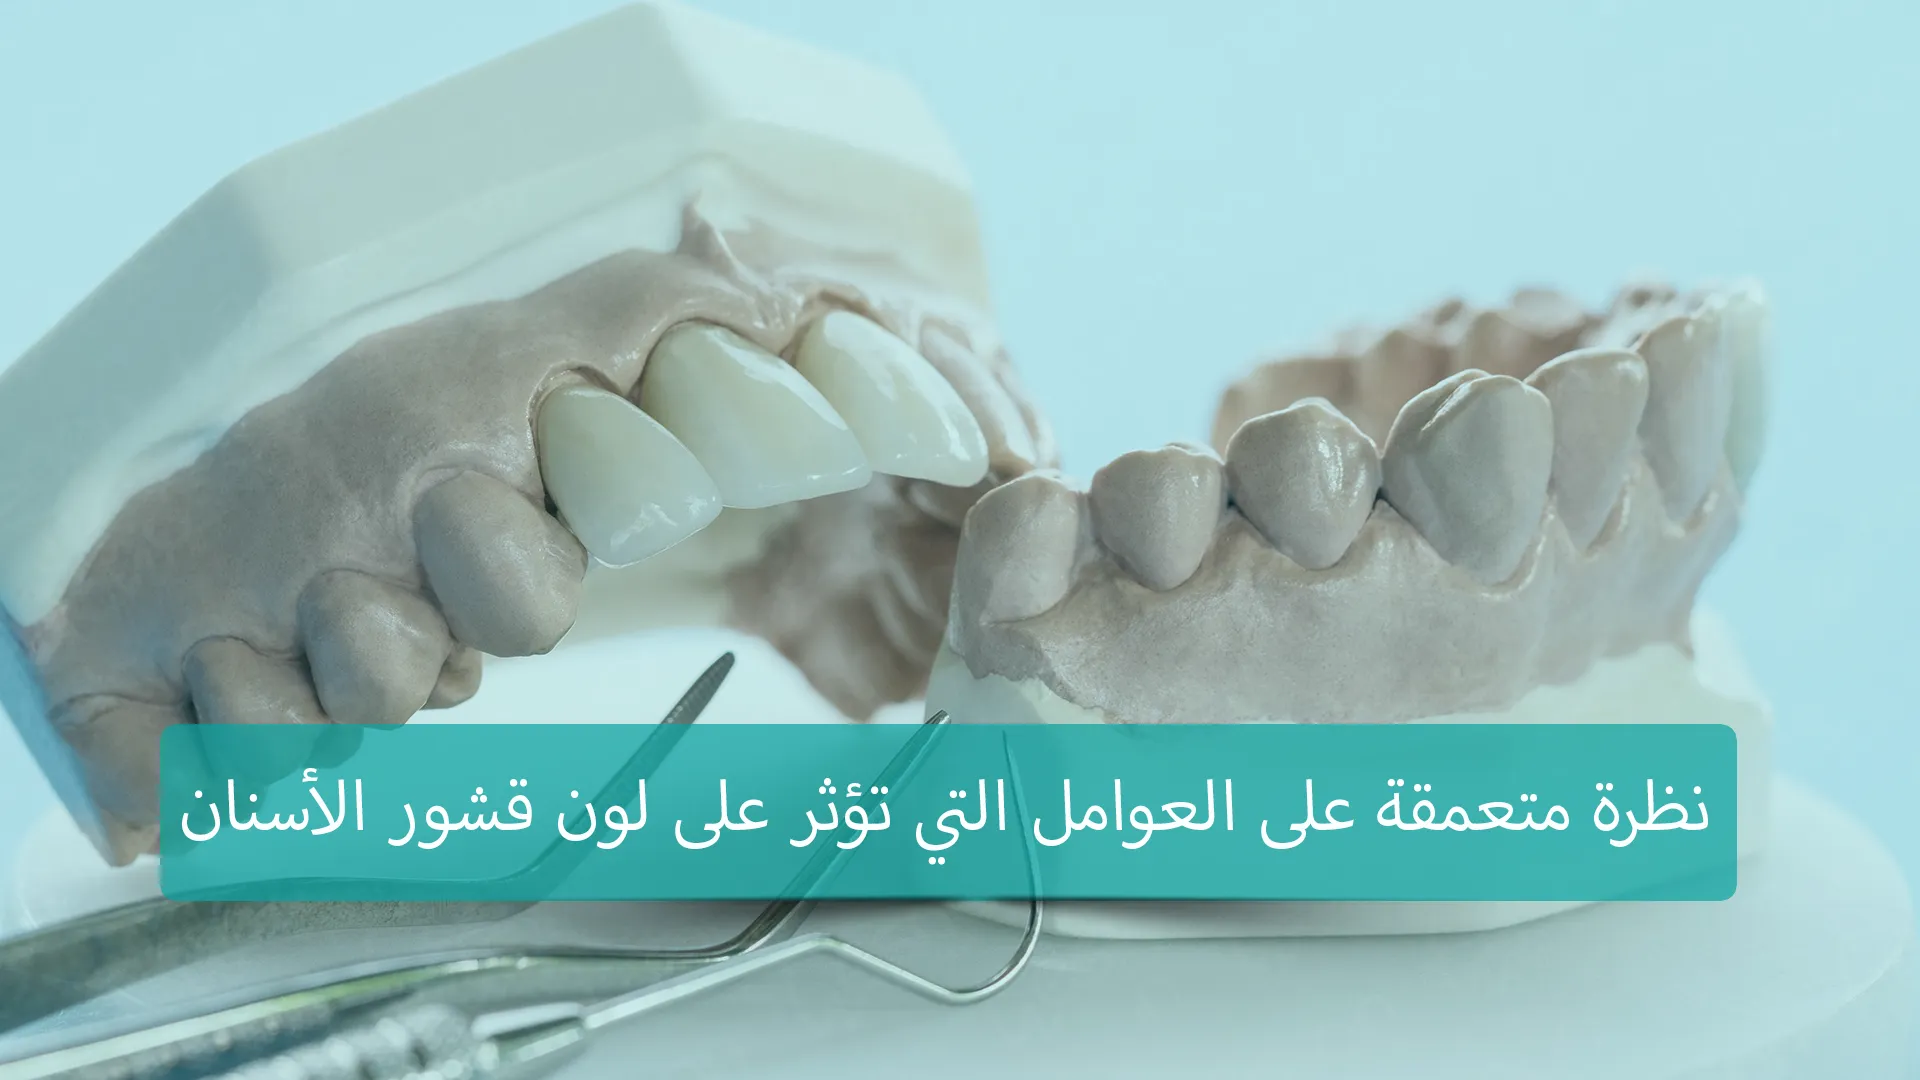 تركيا توفر خدمات علاجية عالية الجودة لتركيب قشور الأسنان، والتي تعد من العلاجات التجميلية الشائعة. يتم استخدام قشور الأسنان لتحسين مظهر الأسنان من خلال تغطية العيوب مثل التصبغات والتشققات، مما يؤدي إلى ابتسامة جميلة ومتألقة.